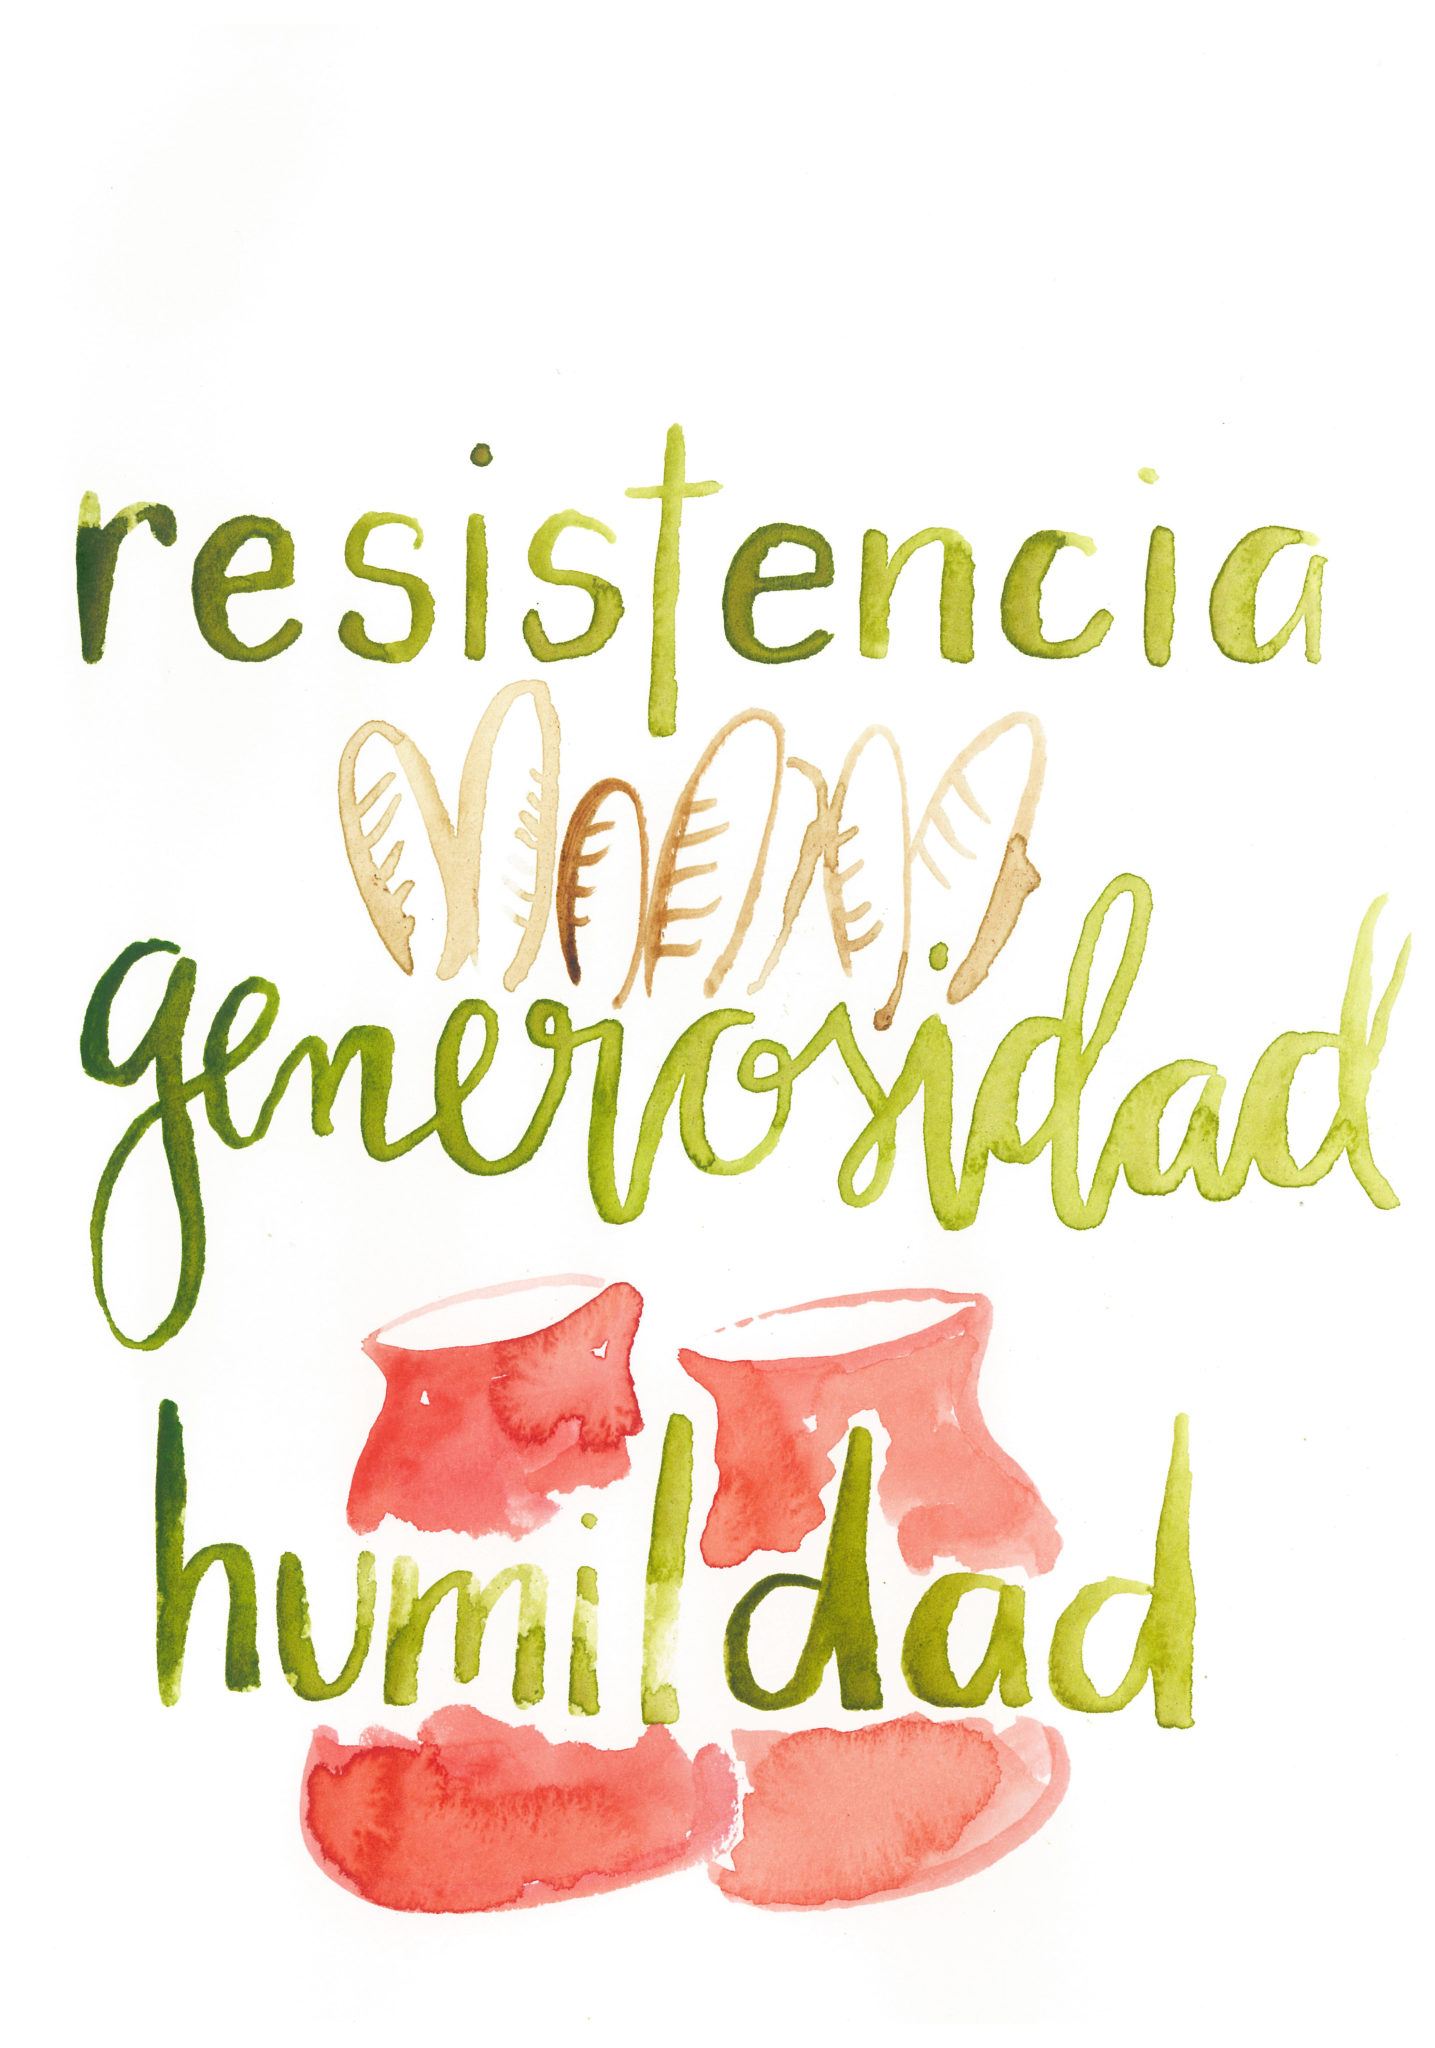 Arte del capítulo de Abigail con las palabras "resistencia", "generosidad" y "humildad" e iconos de pan y jarras